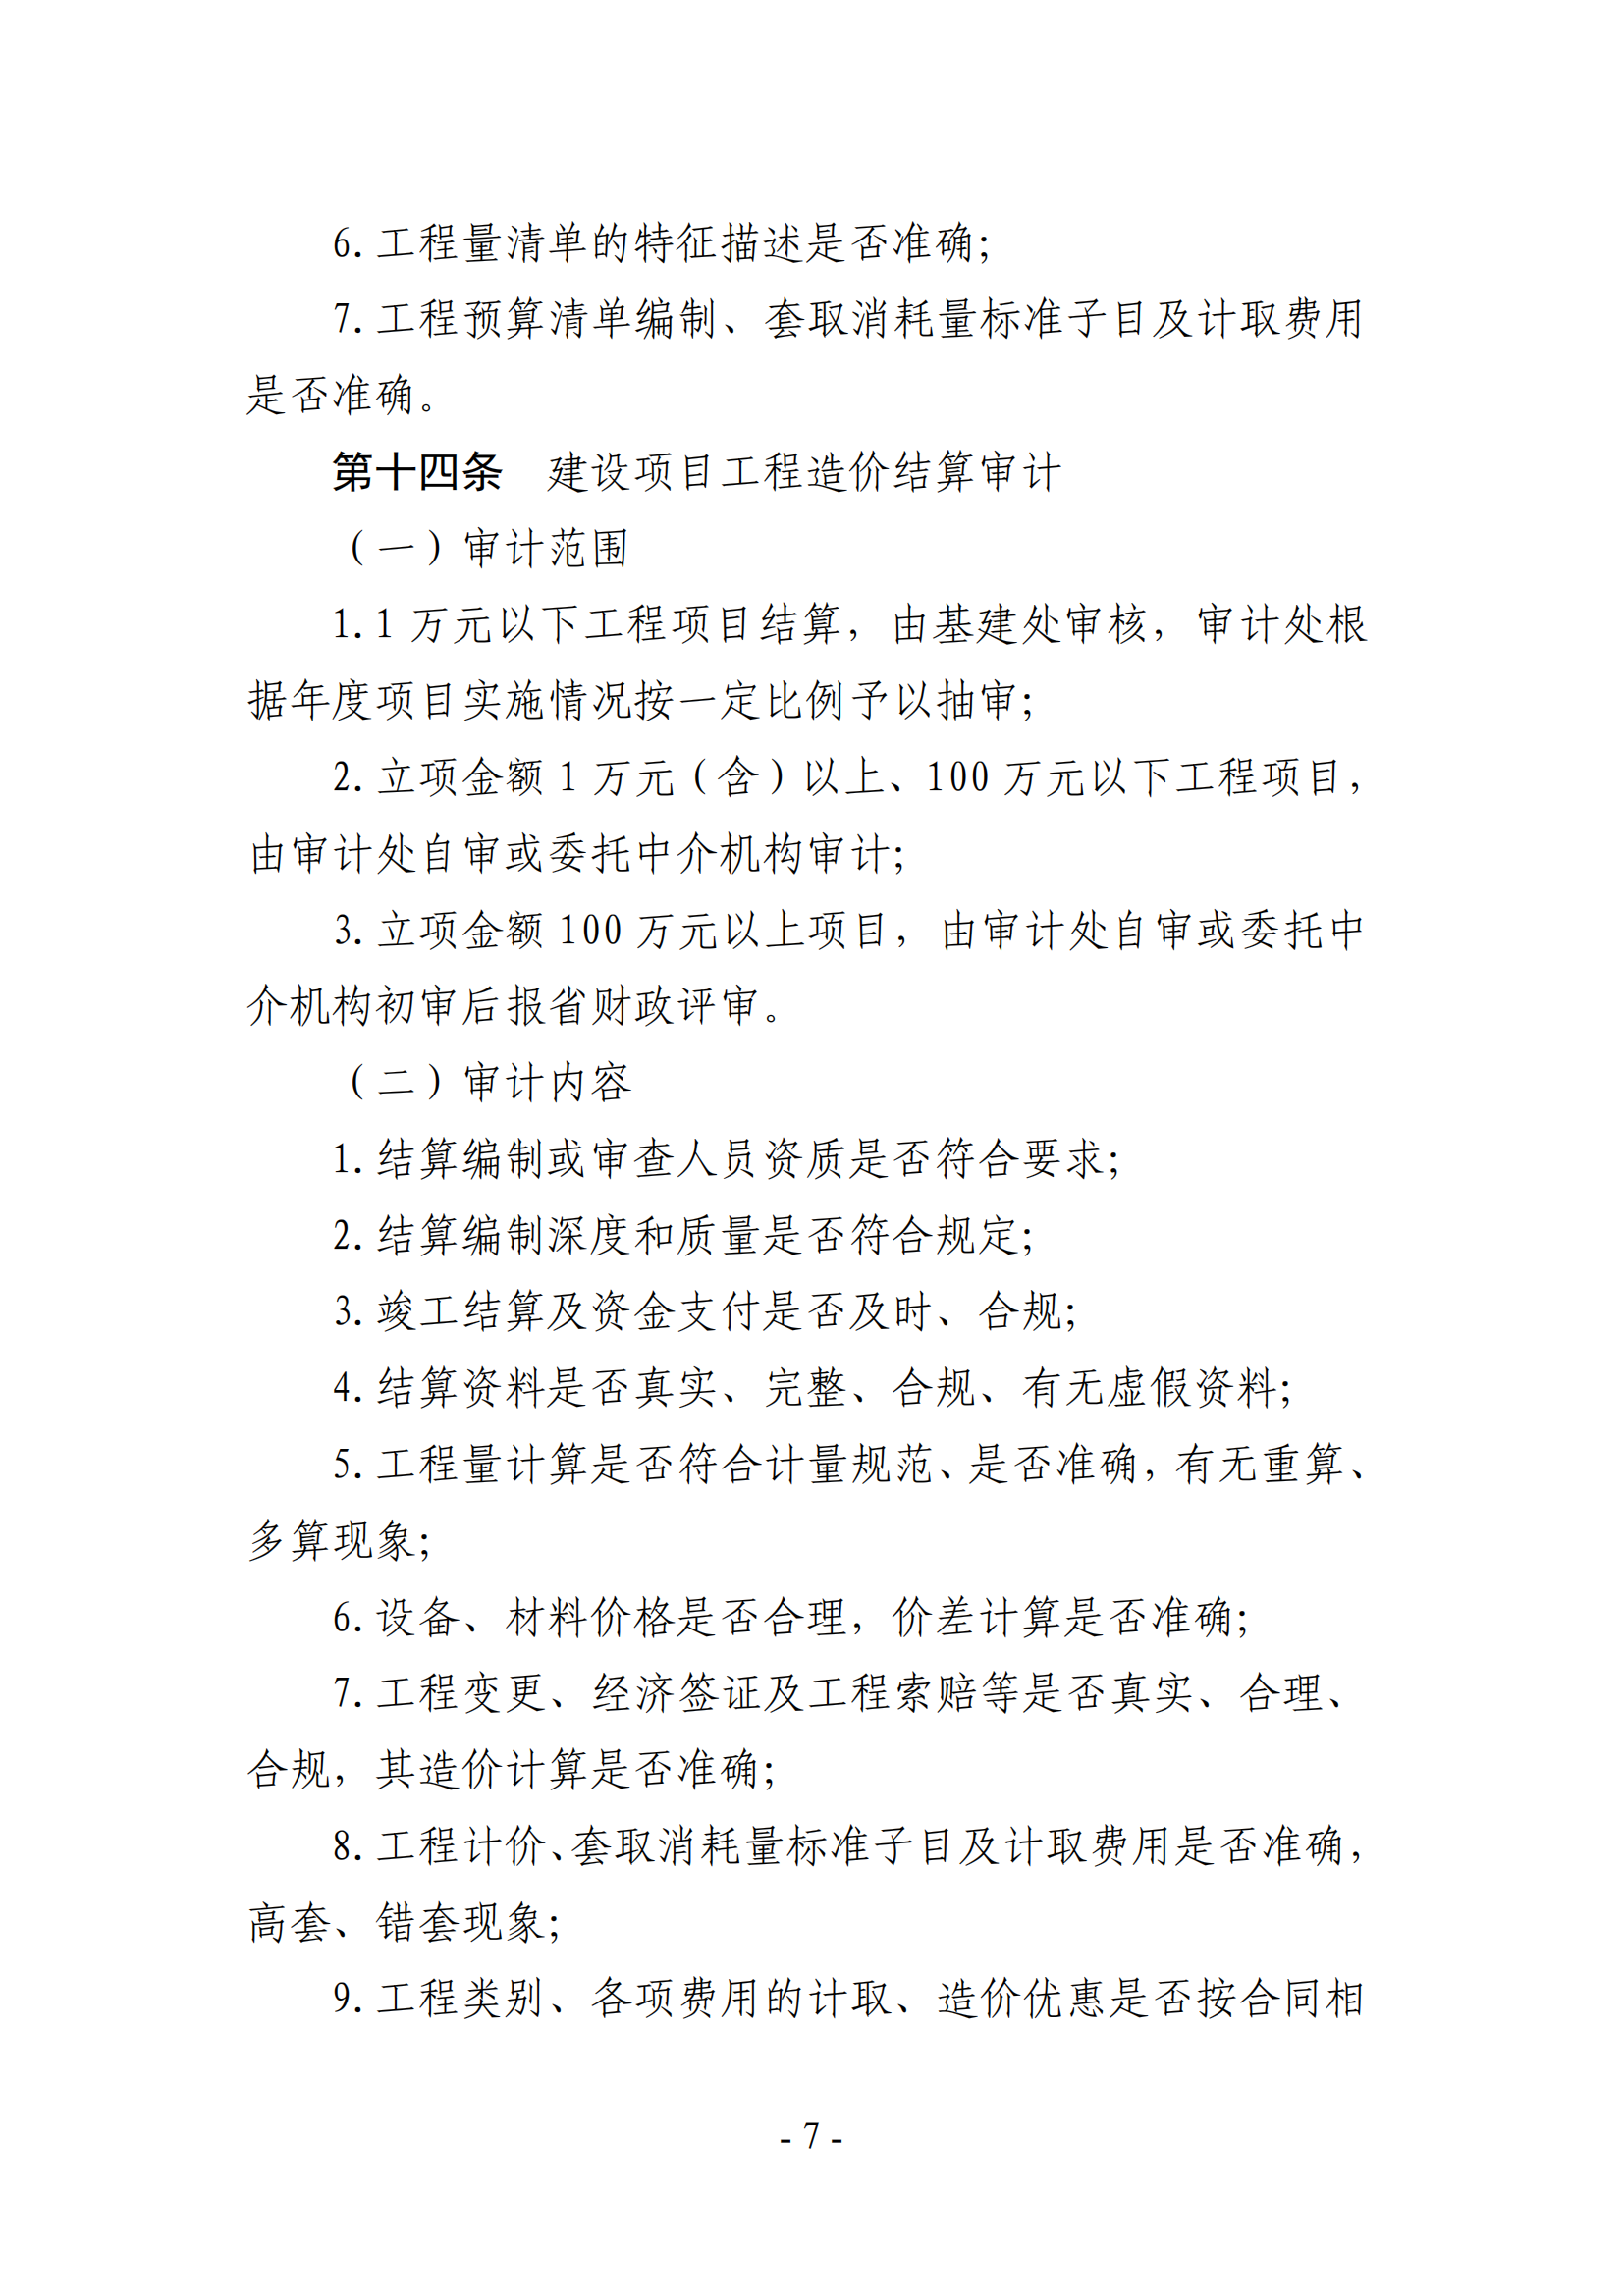 关于印发《湖南农业大学基建、修缮工程项目审计实施办法》的通知-正文_06.png